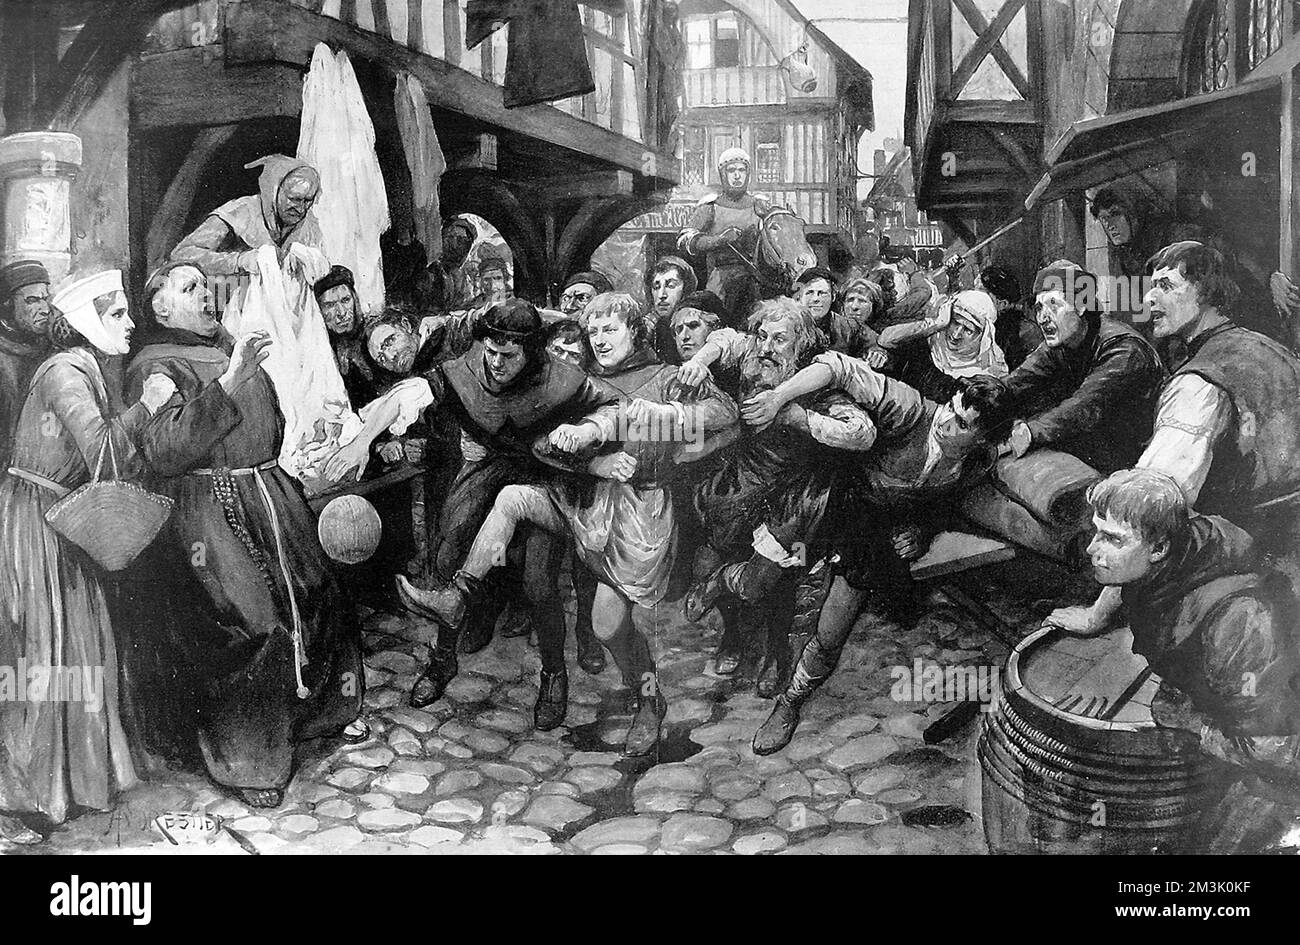 Ilustración de un juego de fútbol que se juega en las calles de Londres durante el siglo 14th. El fútbol de esta época, jugado sin reglas en estrechas calles medievales, era a la vez fantásticamente popular e igualmente violento. En 1314, un grupo de comerciantes londinenses le pidió al rey Eduardo II que prohibiera jugar al fútbol, debido al impacto que estaba teniendo en su negocio. El rey estaba encantado de prohibir el juego, sintiendo que 'podrían surgir males...' de jugar al fútbol. Fecha: 1905 Foto de stock